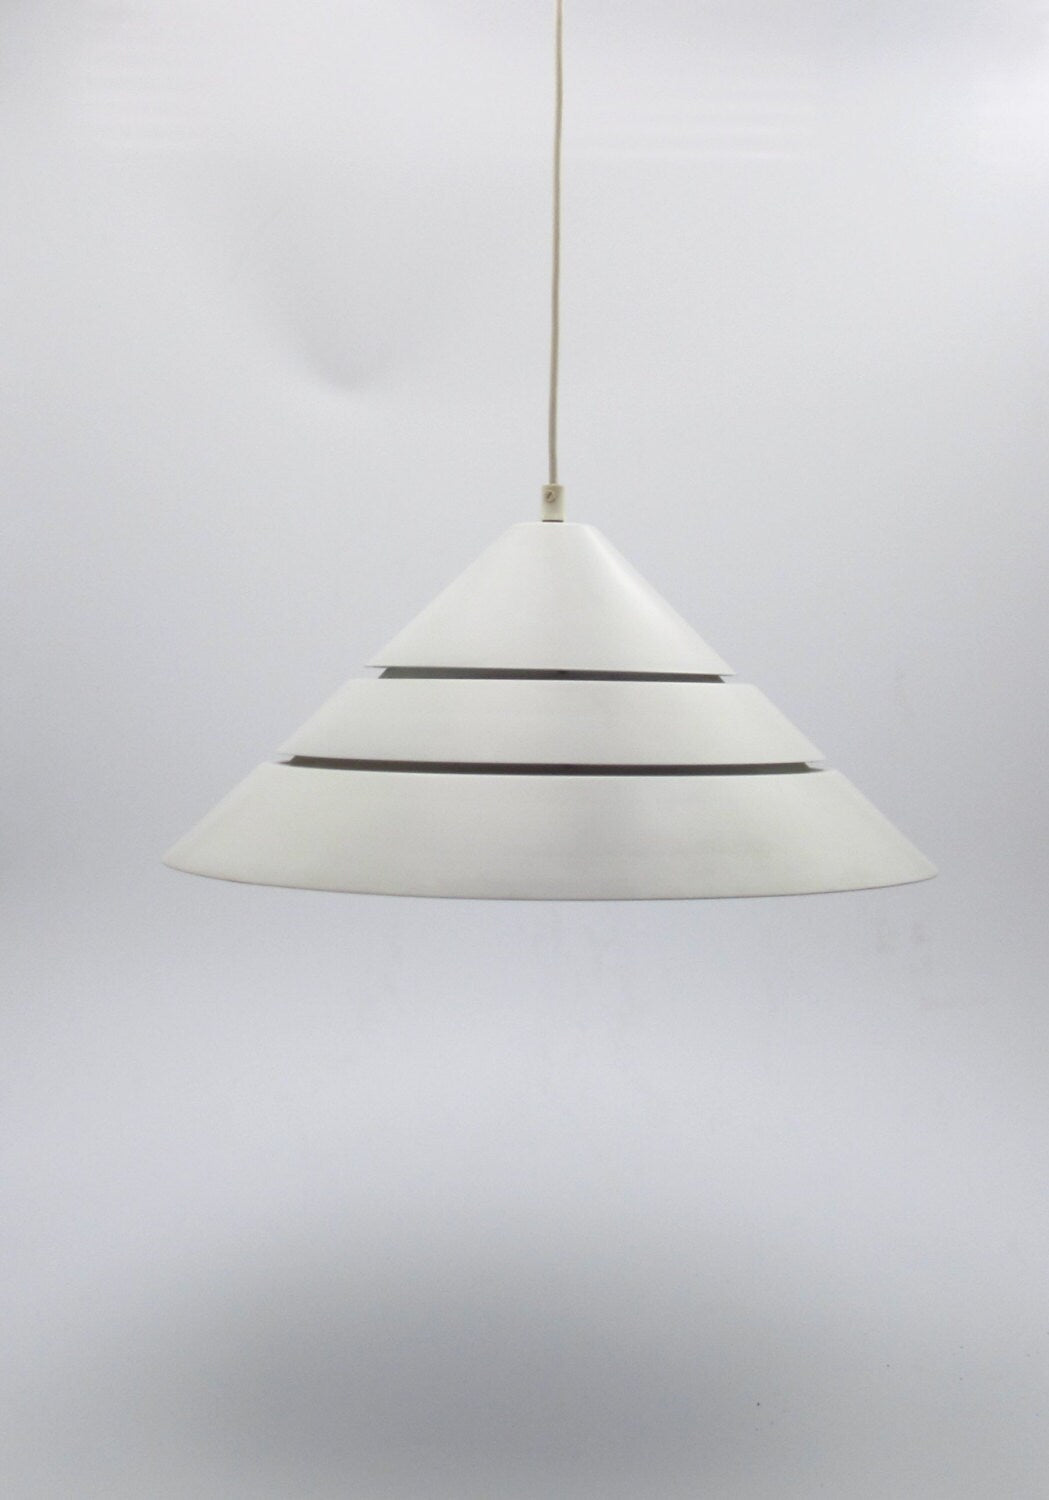 Hans Agne Jakobsson AB markaryd sweden lámpara colgante, precioso diseño sueco colgante blanco